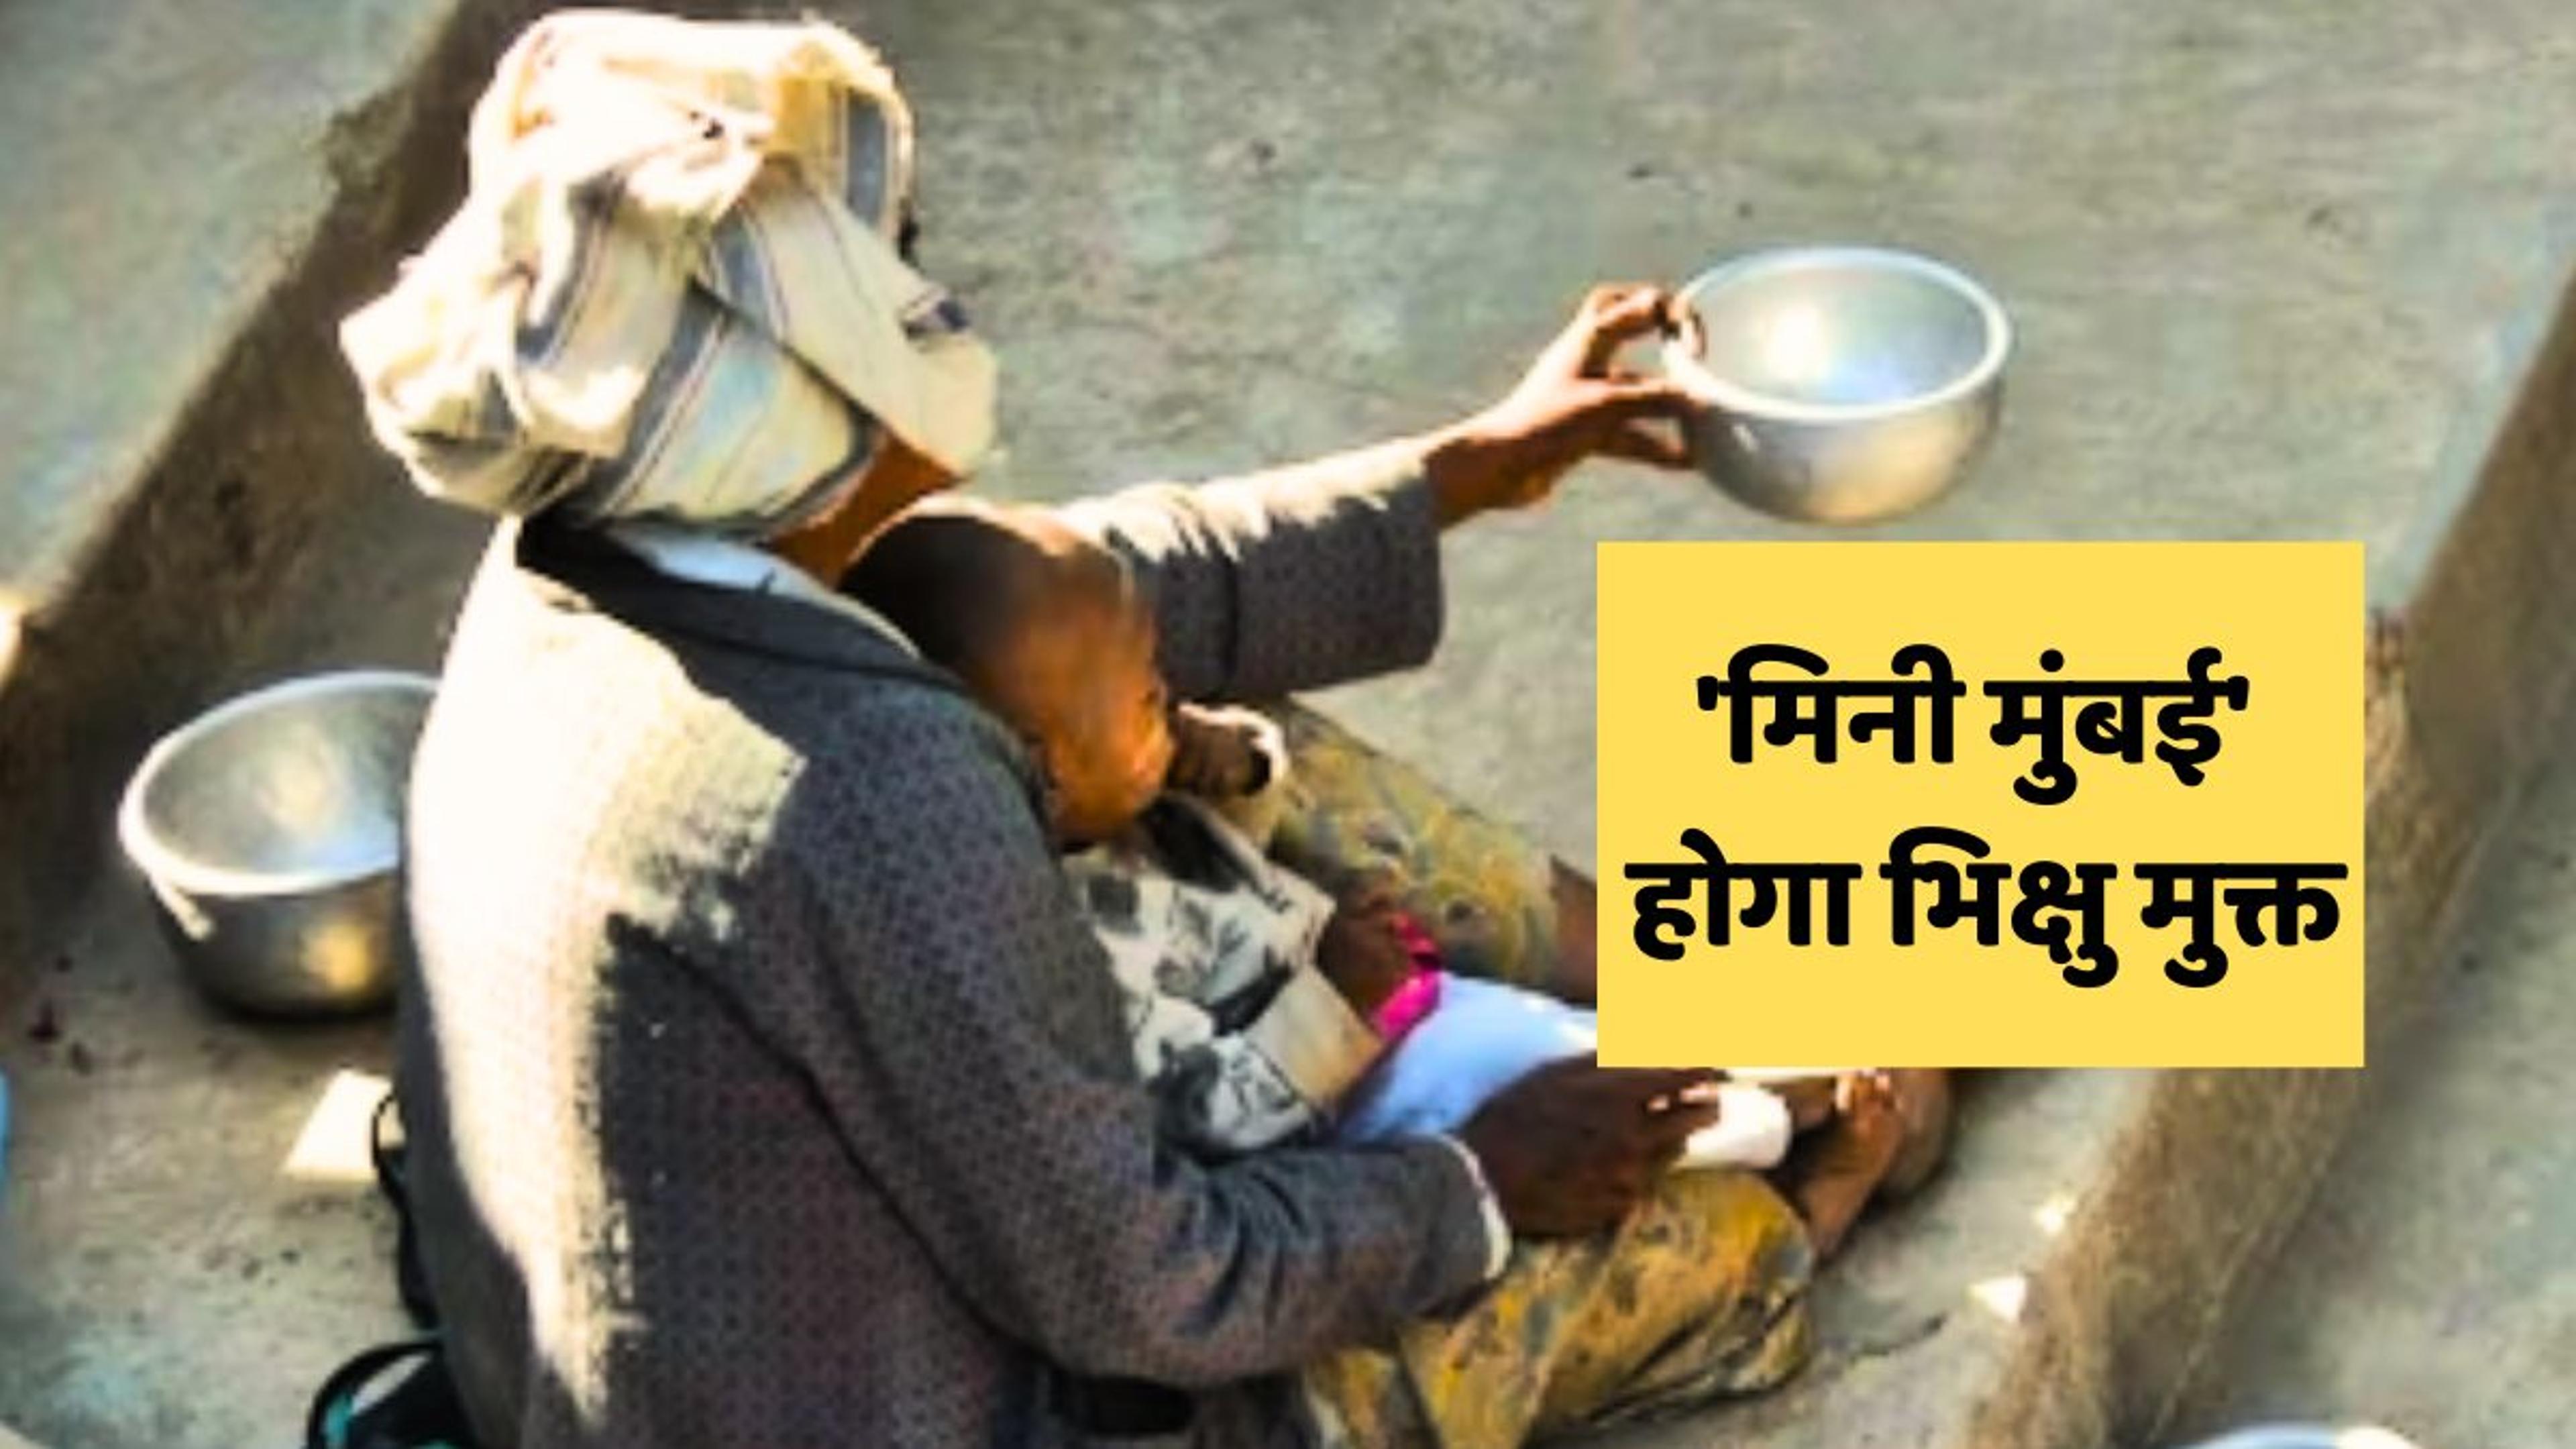 Beggars Free City :’मिनी मुंबई’ में भिखारियों को दी भीख तो देना होगा, भारी
जुर्माना